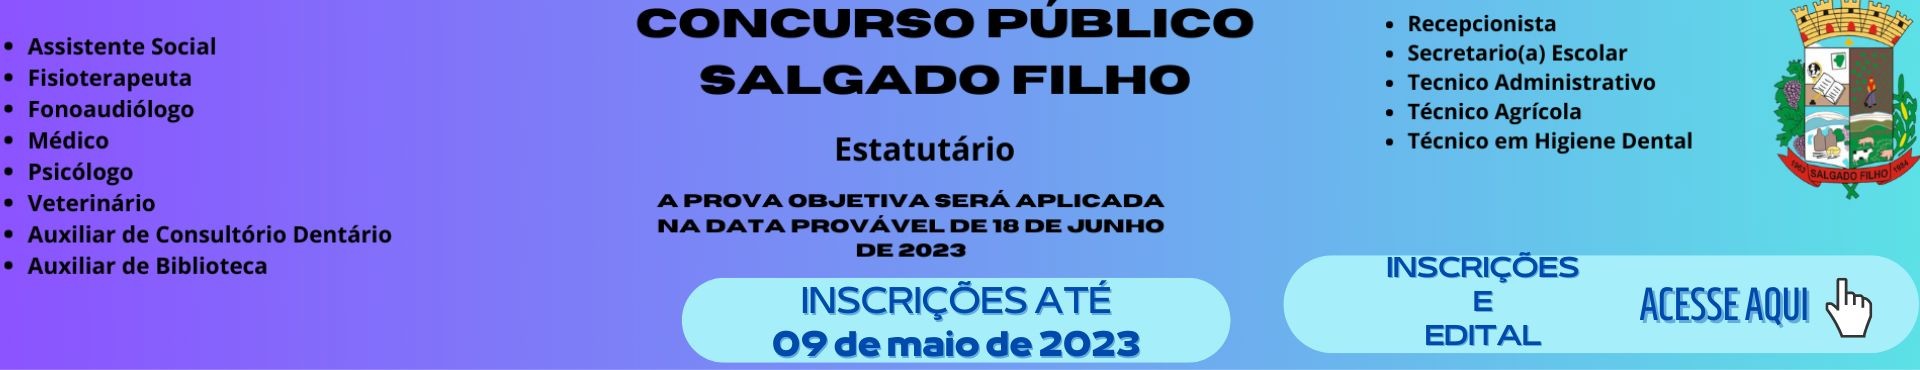 CONCURSO PÚBLICO 2023